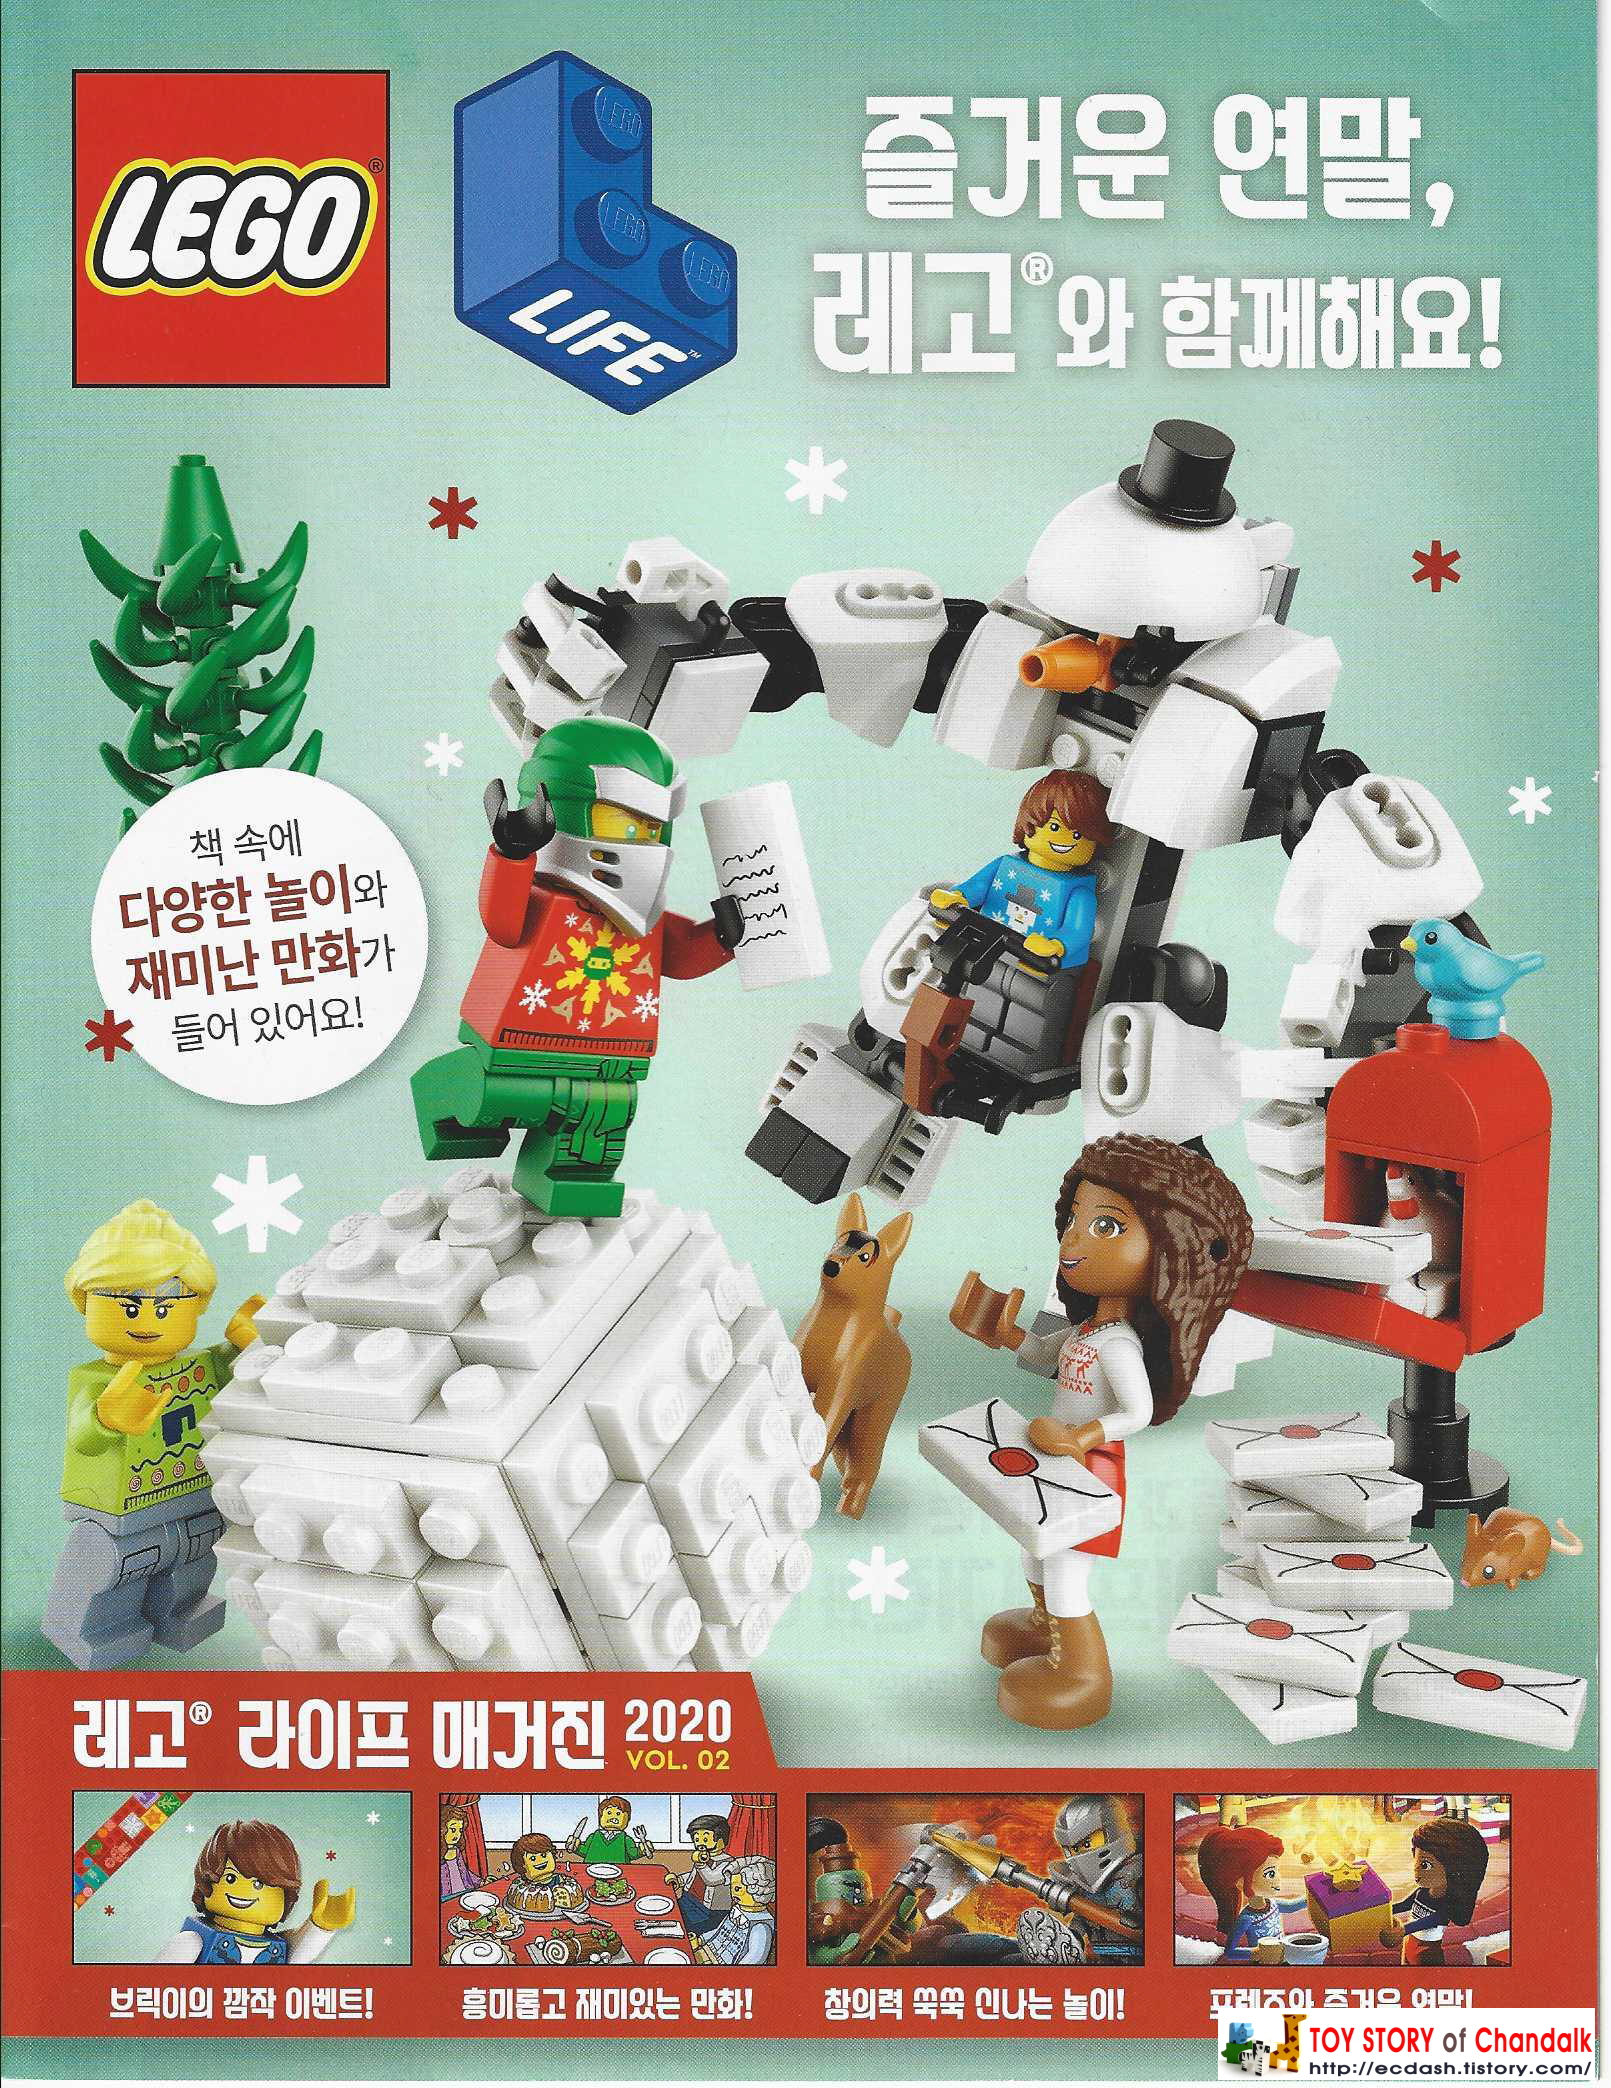 [레고] LEGO 즐거운 연말&#44; 레고와 함께해요! / 레고 라이프 매거진 2020년 VOL. 02